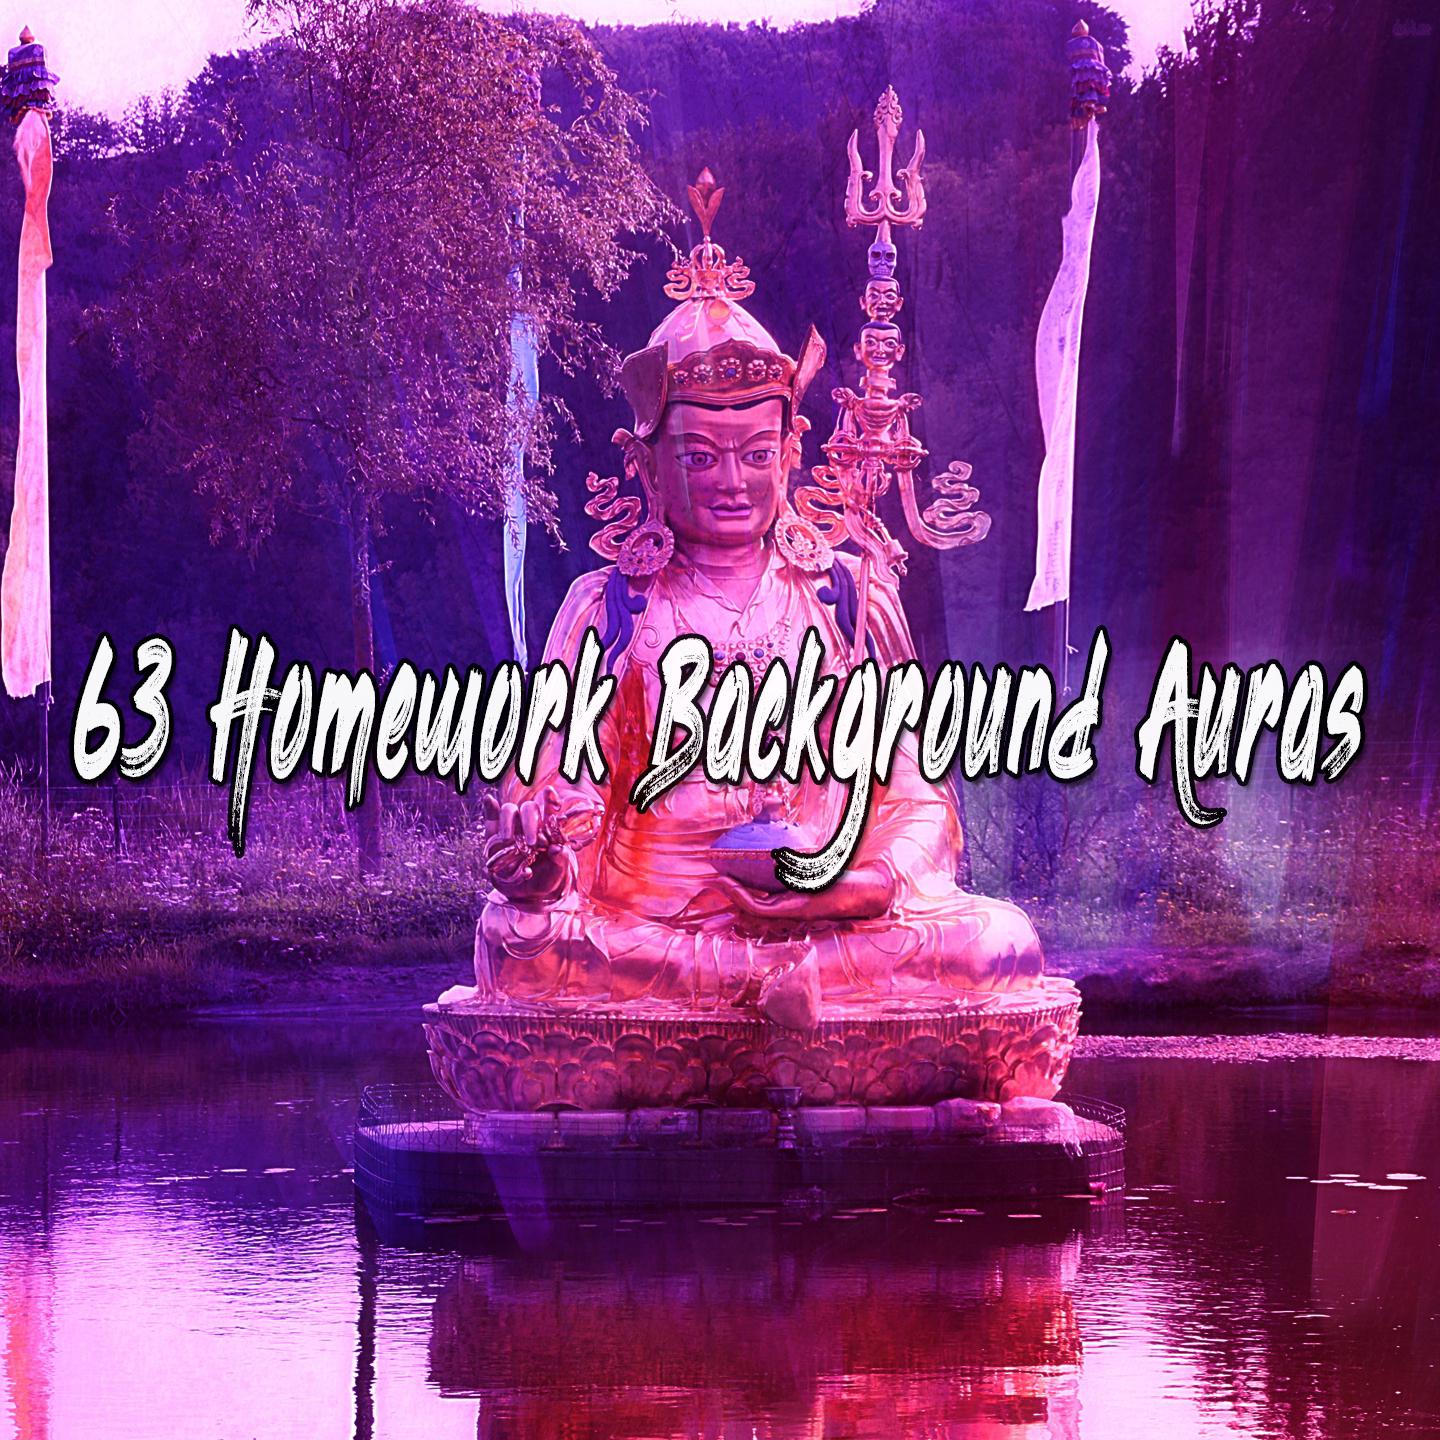 63 Homework Background Auras